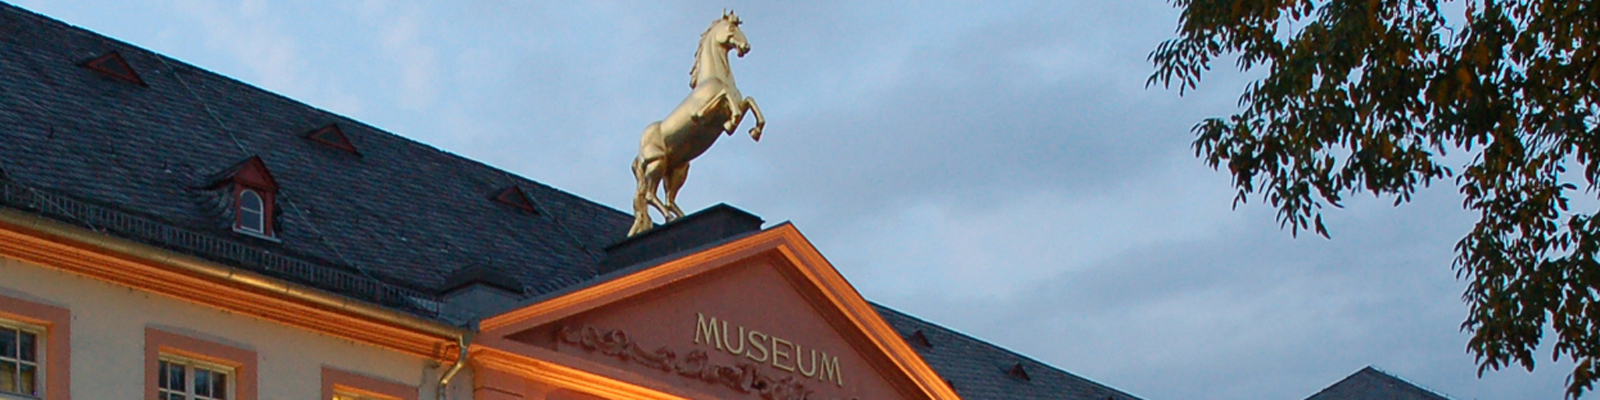 Außansicht des Museums mit goldenem Pferd